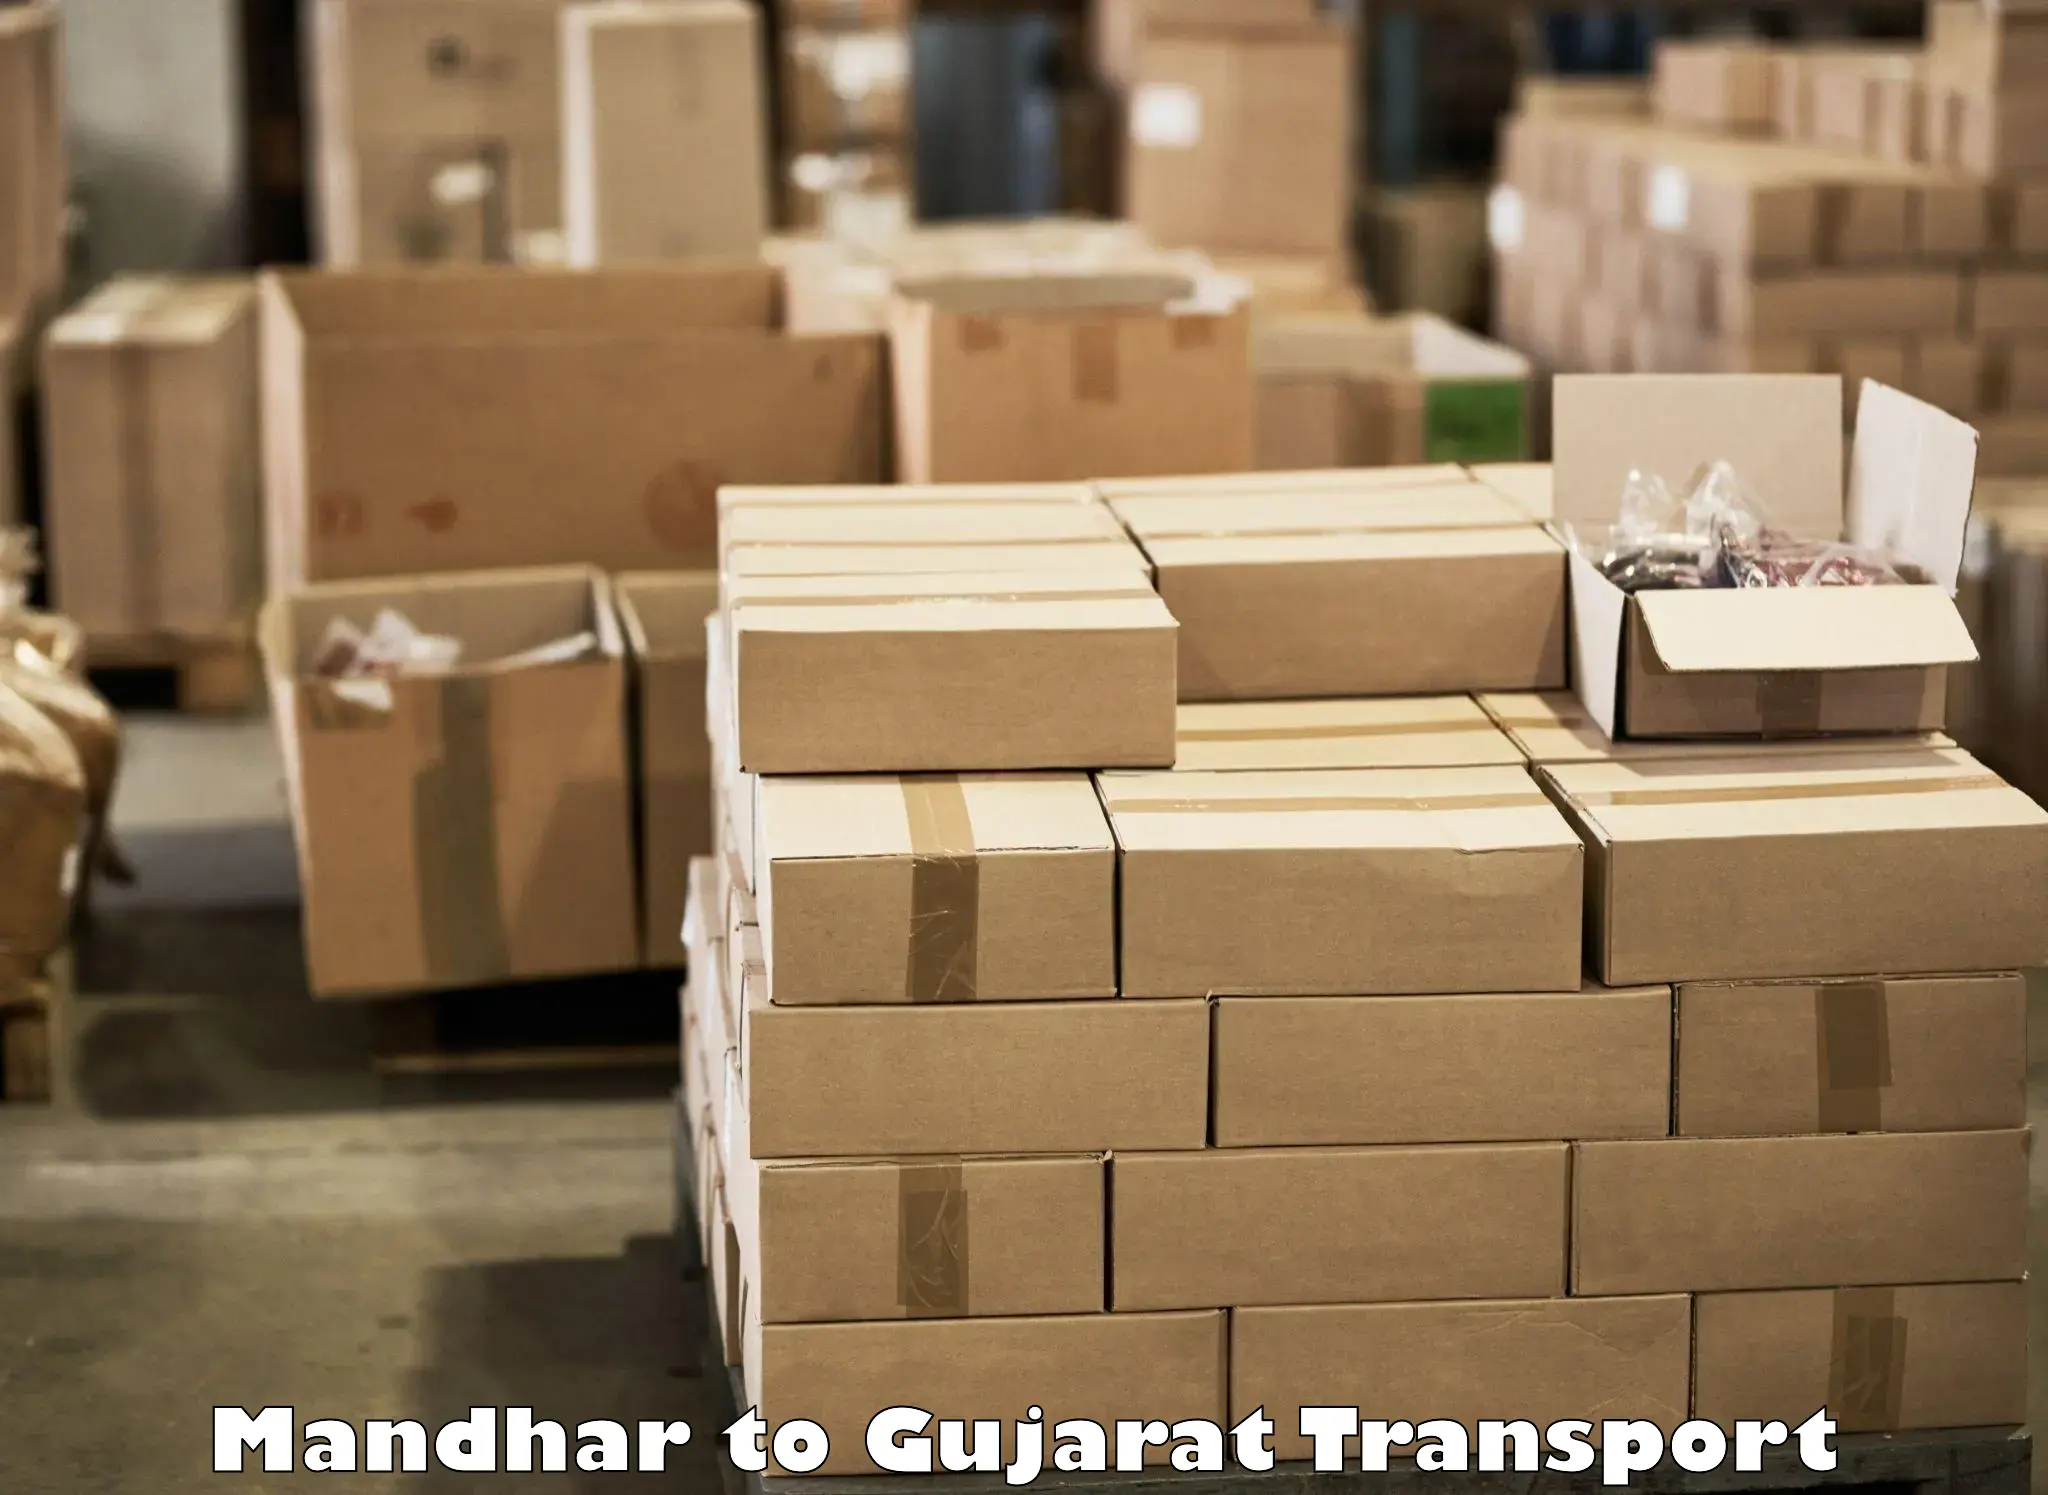 Air cargo transport services Mandhar to Vijapur